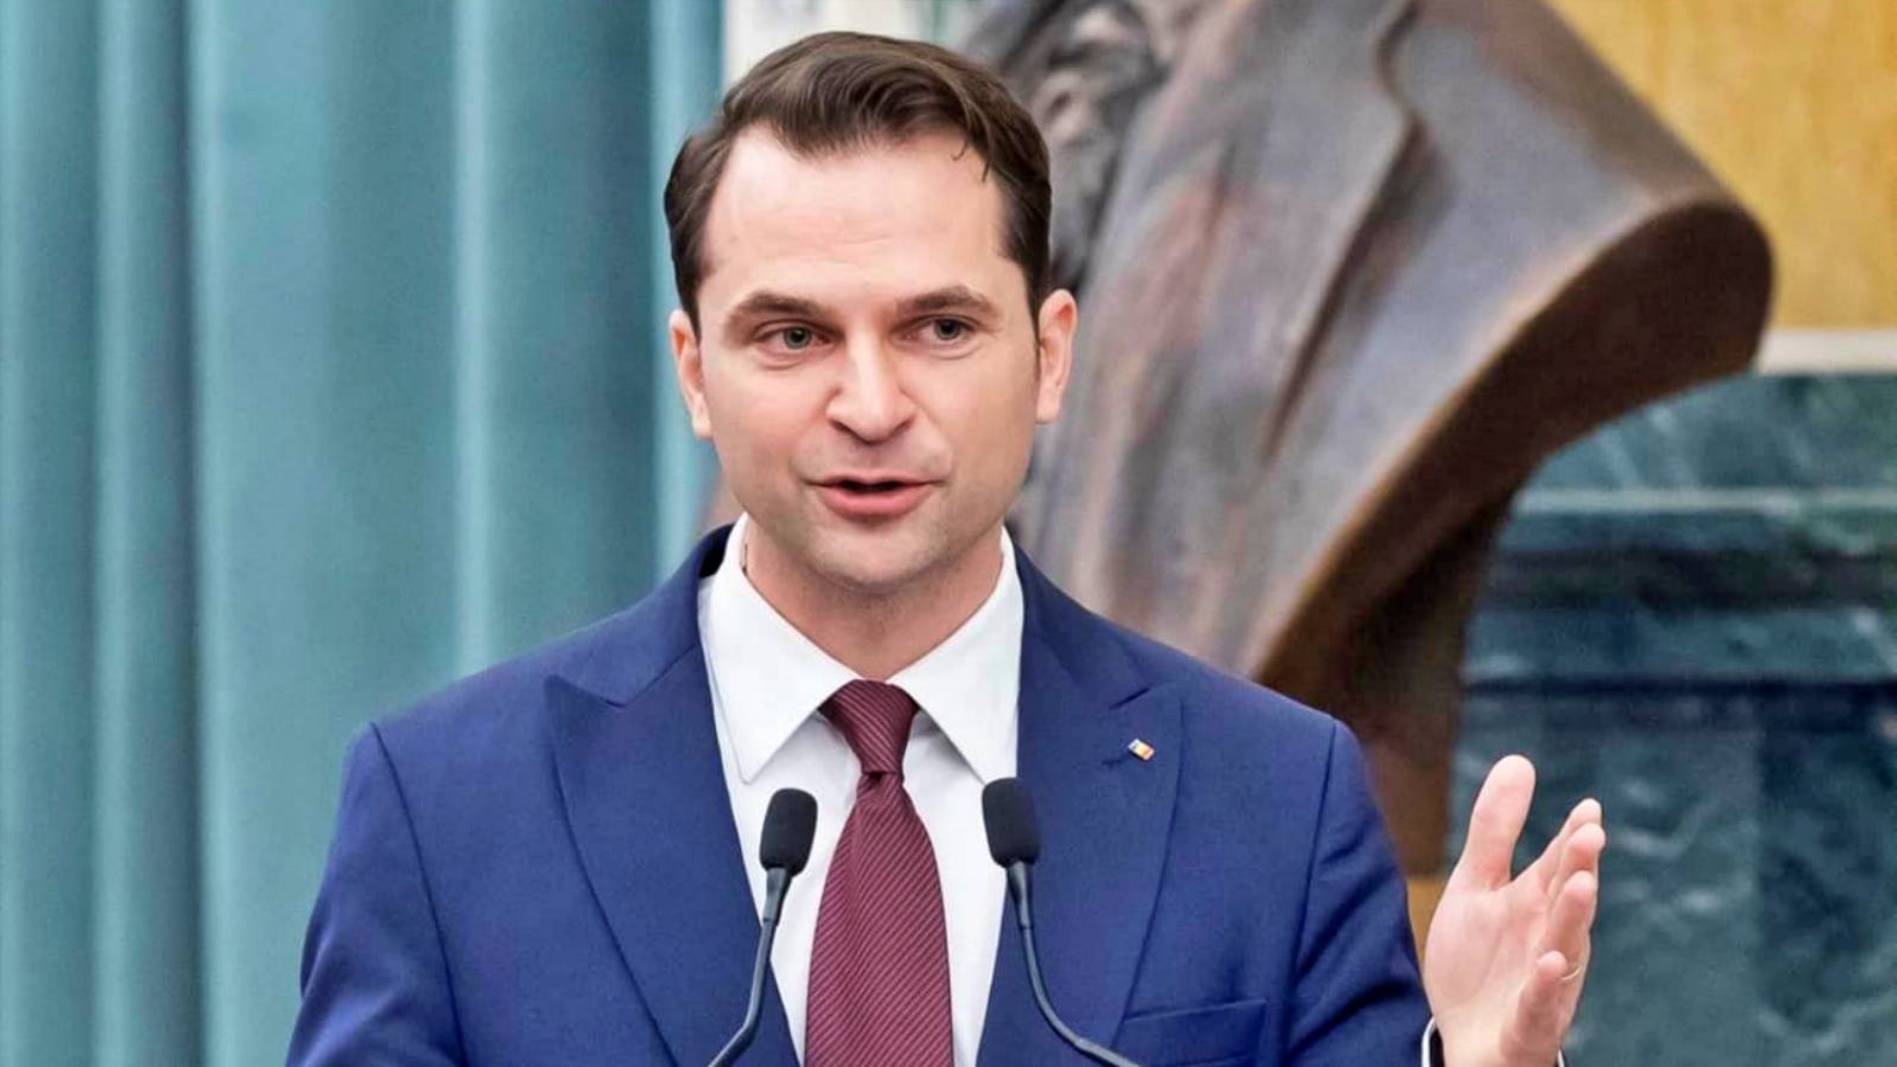 Sebastian Burduja Ważne oficjalne ogłoszenia OSTATNI CZAS Zgłaszanie kandydatury Ratusz Bukaresztu